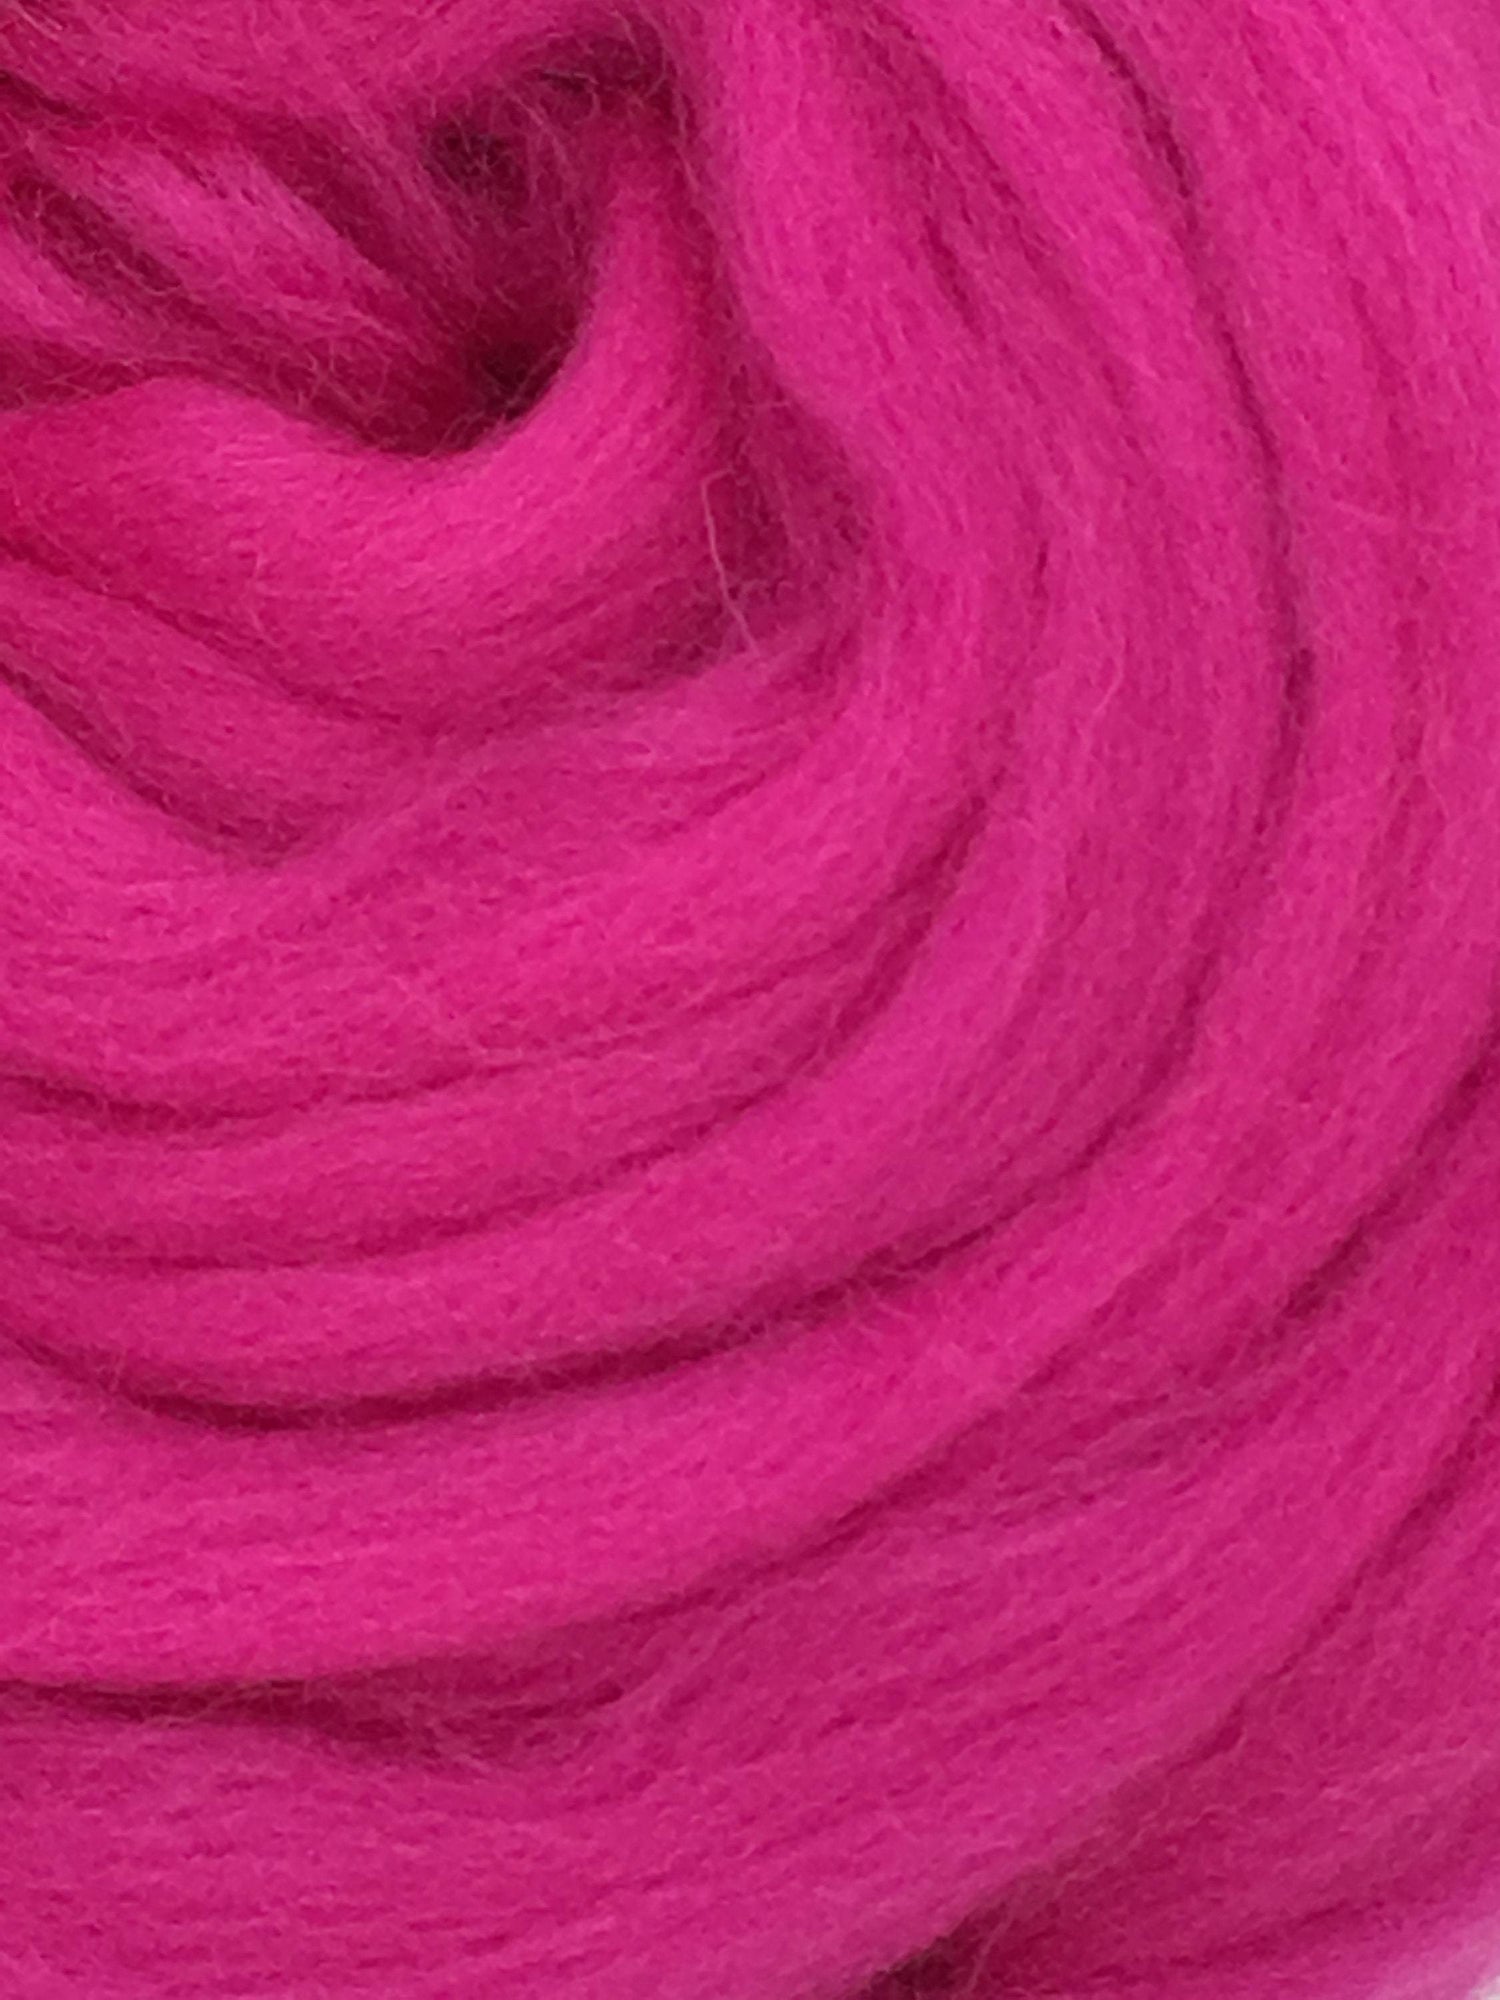 Pink Wool Top Roving